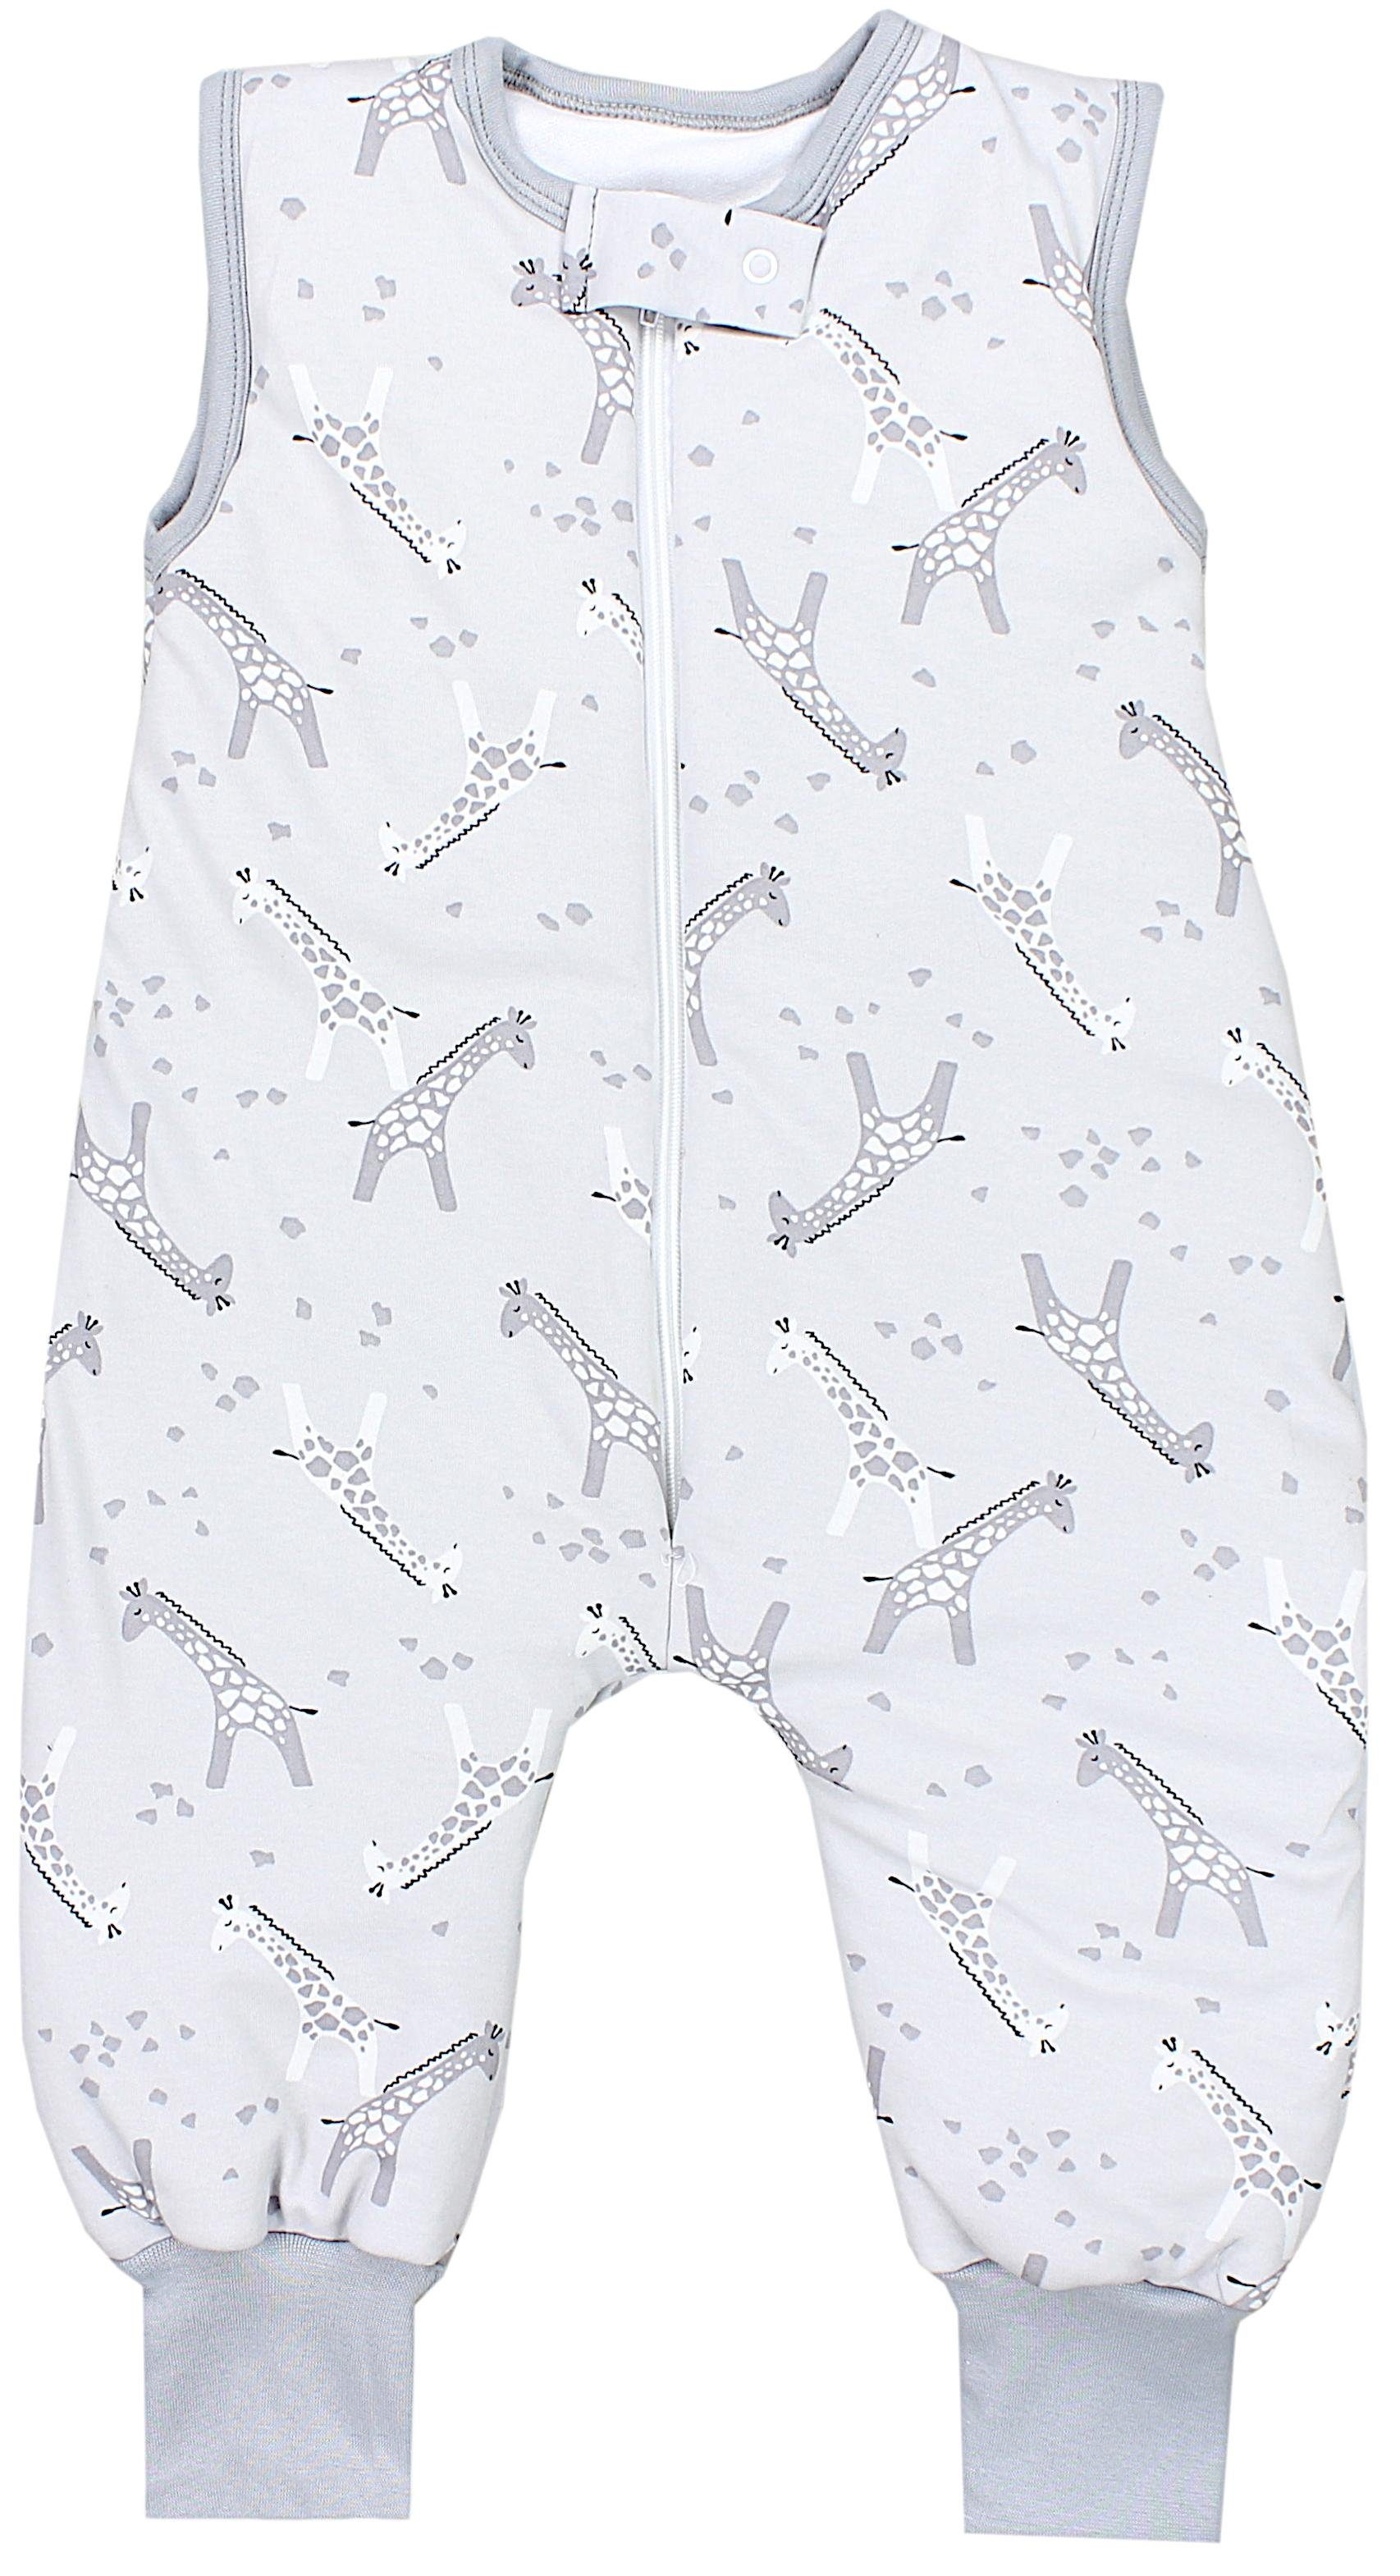 TupTam Babyschlafsack Winter Schlafsack mit Beinen OEKO-TEX zertifiziert 2,5 TOG Unisex Weiß Graue Giraffen